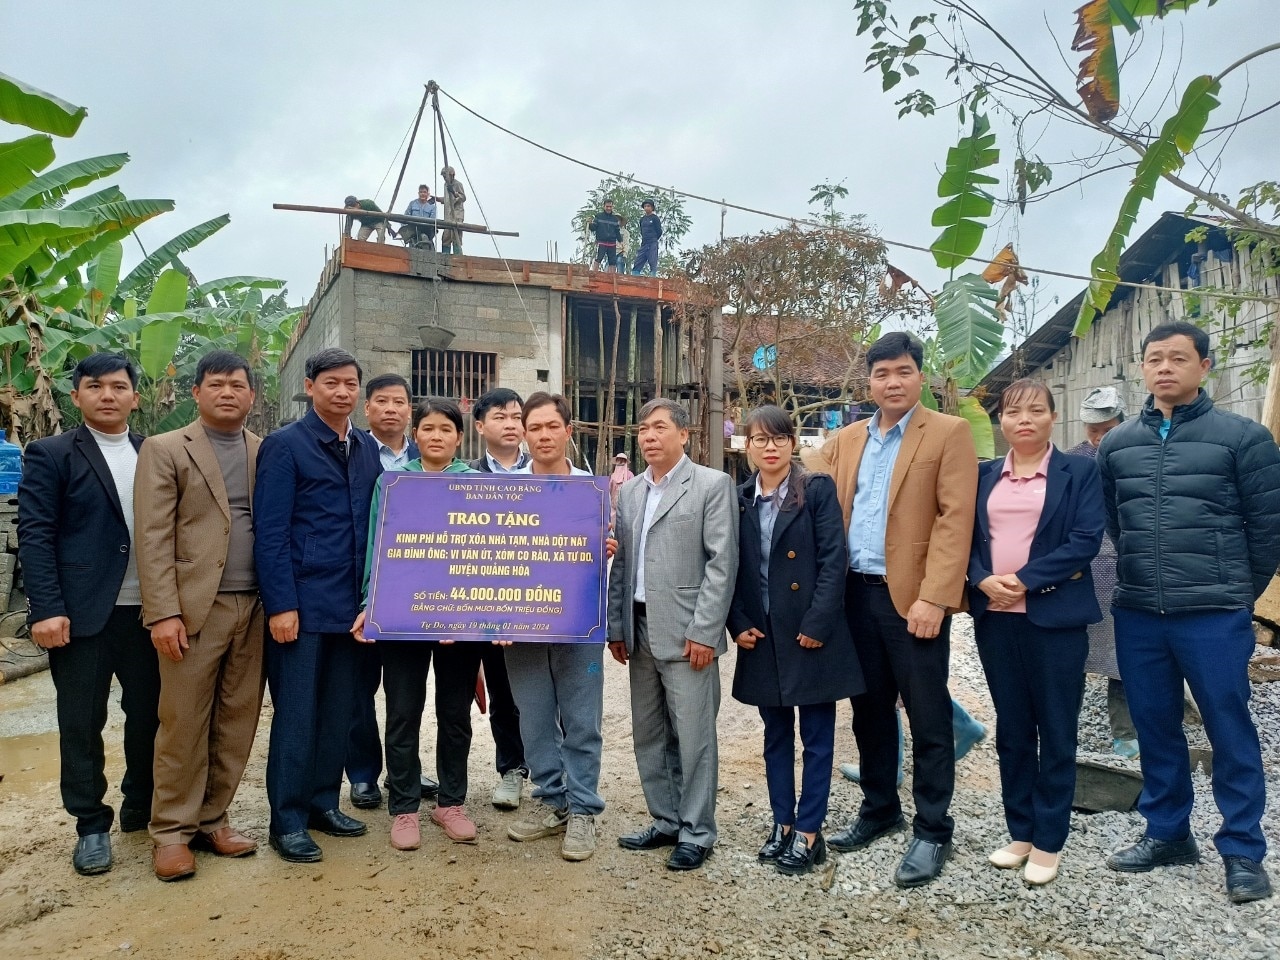 คณะกรรมการชาติพันธุ์ Cao Bang ได้มอบทุนเพื่อสนับสนุนการย้ายบ้านชั่วคราวและทรุดโทรมสำหรับครัวเรือนที่ยากจนในชุมชน Tu Do อำเภอ Quang Hoa